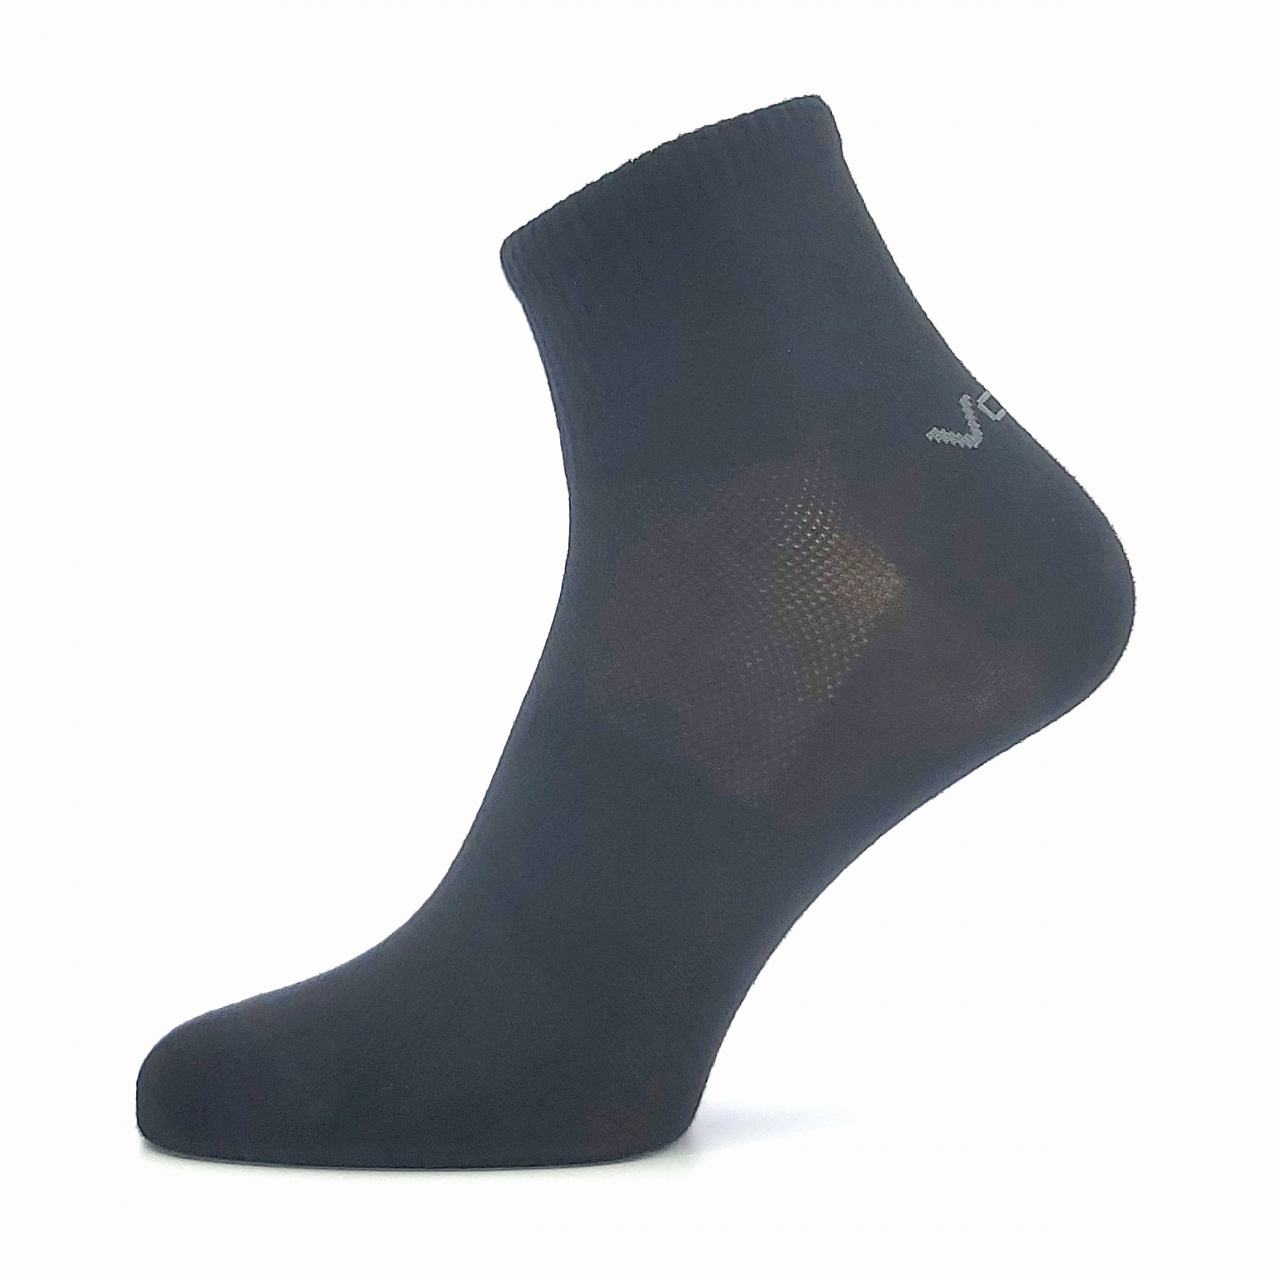 Ponožky unisex klasické Voxx Metym - černé, 35-38